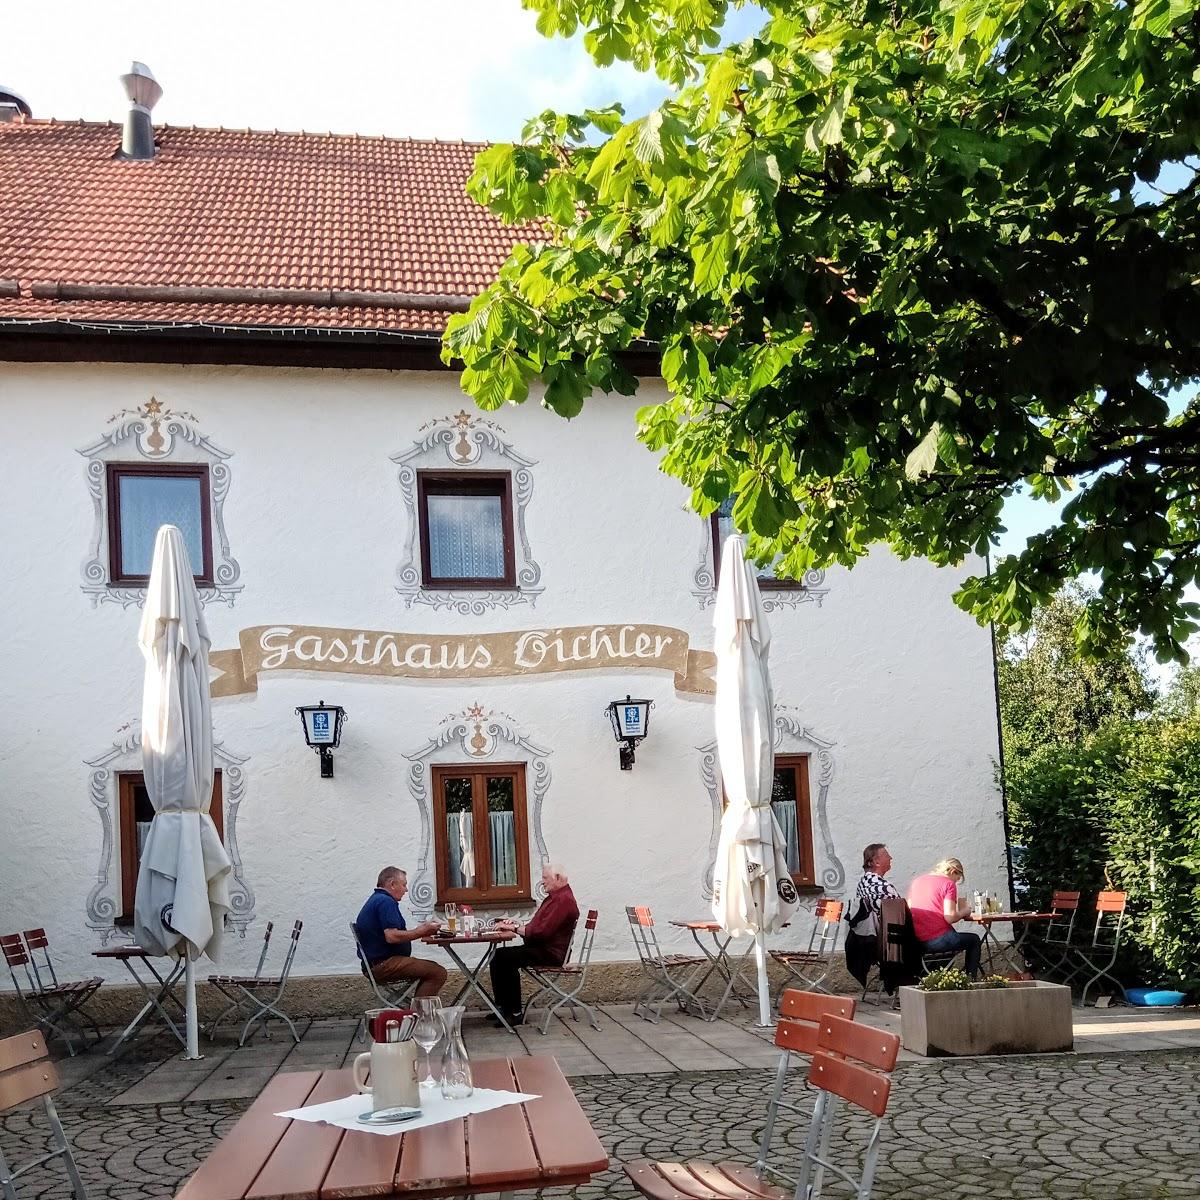 Restaurant "Gasthaus Bichler" in  Ramerberg